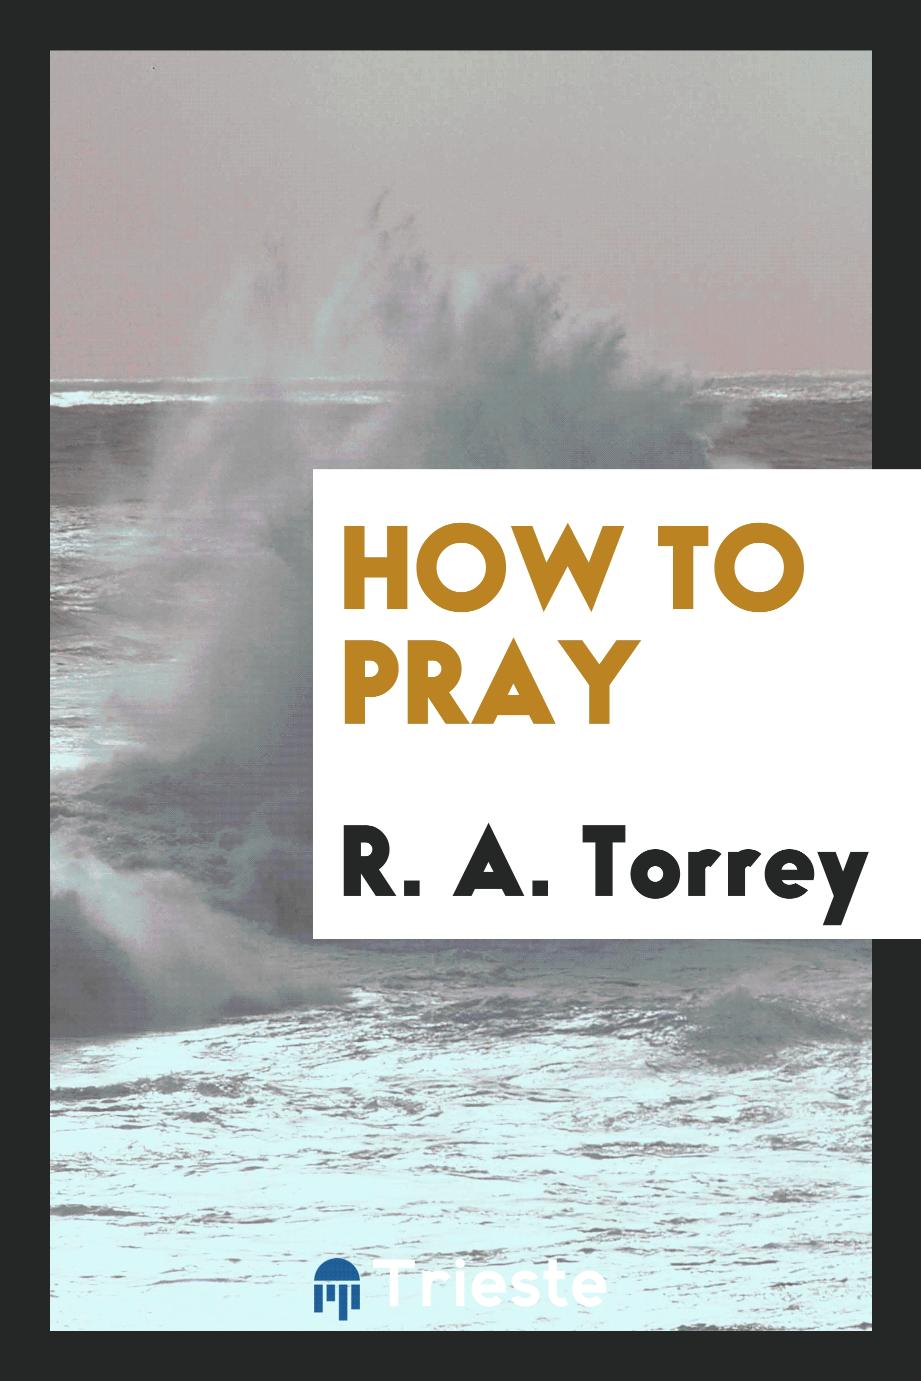 R. A. Torrey - How to pray